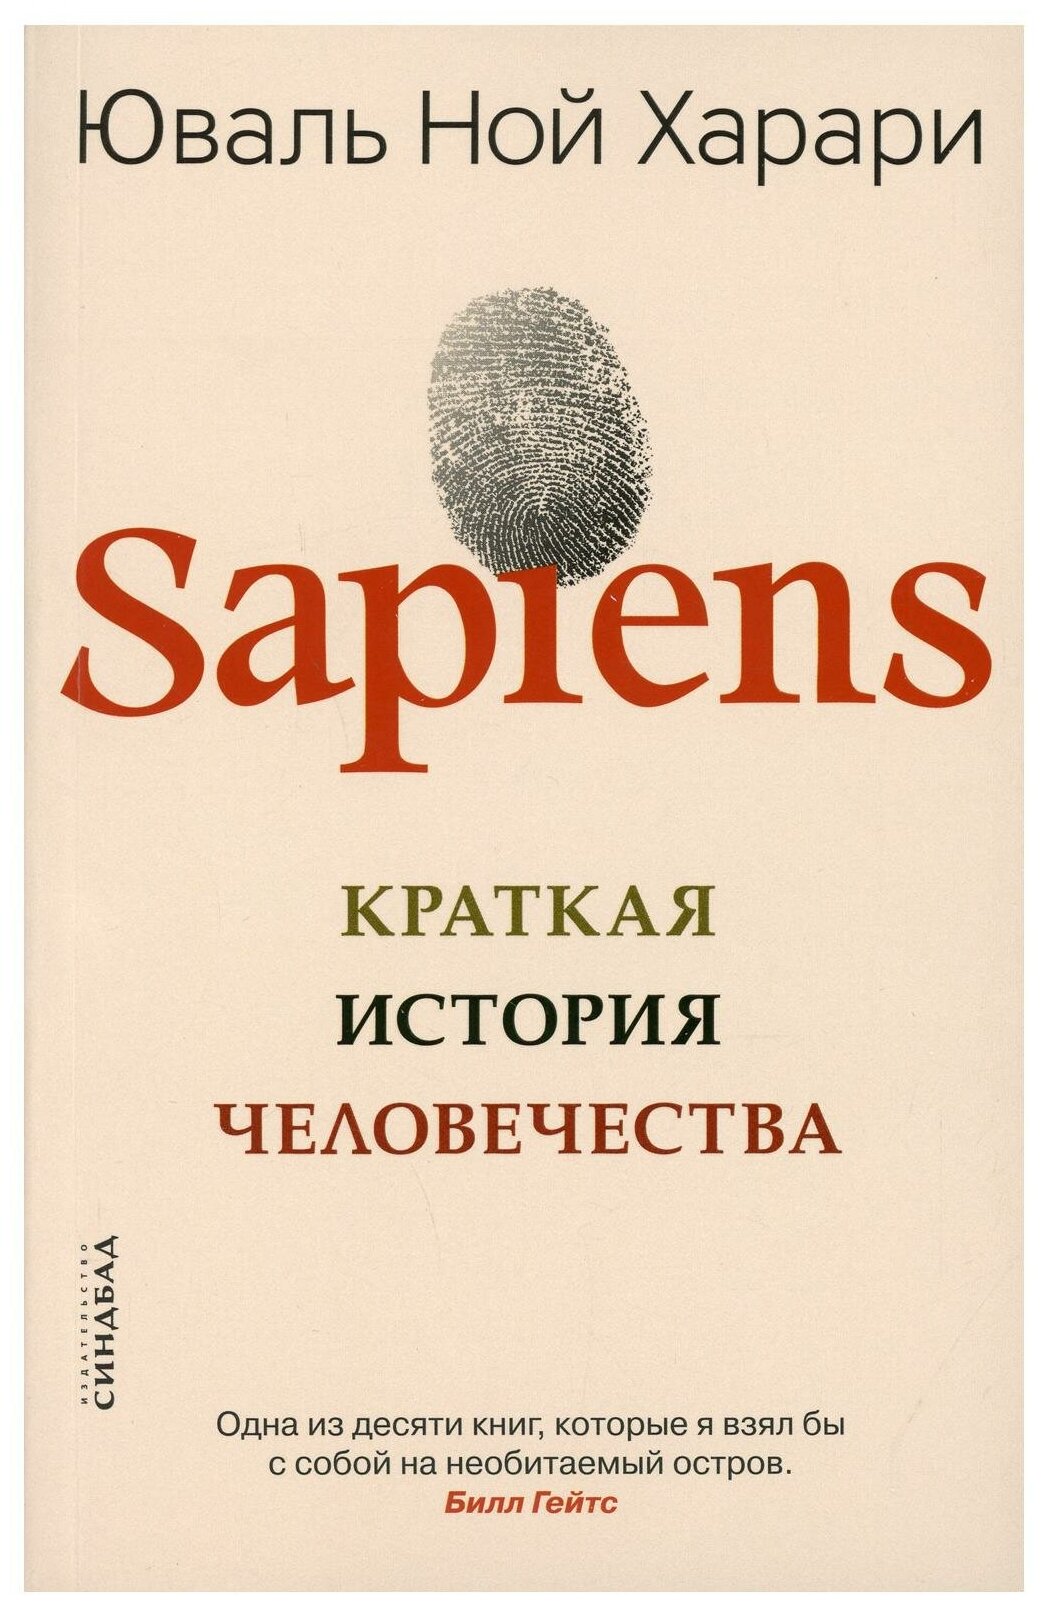 Sapiens. Краткая история человечества. Харари Ю. Н. Синдбад